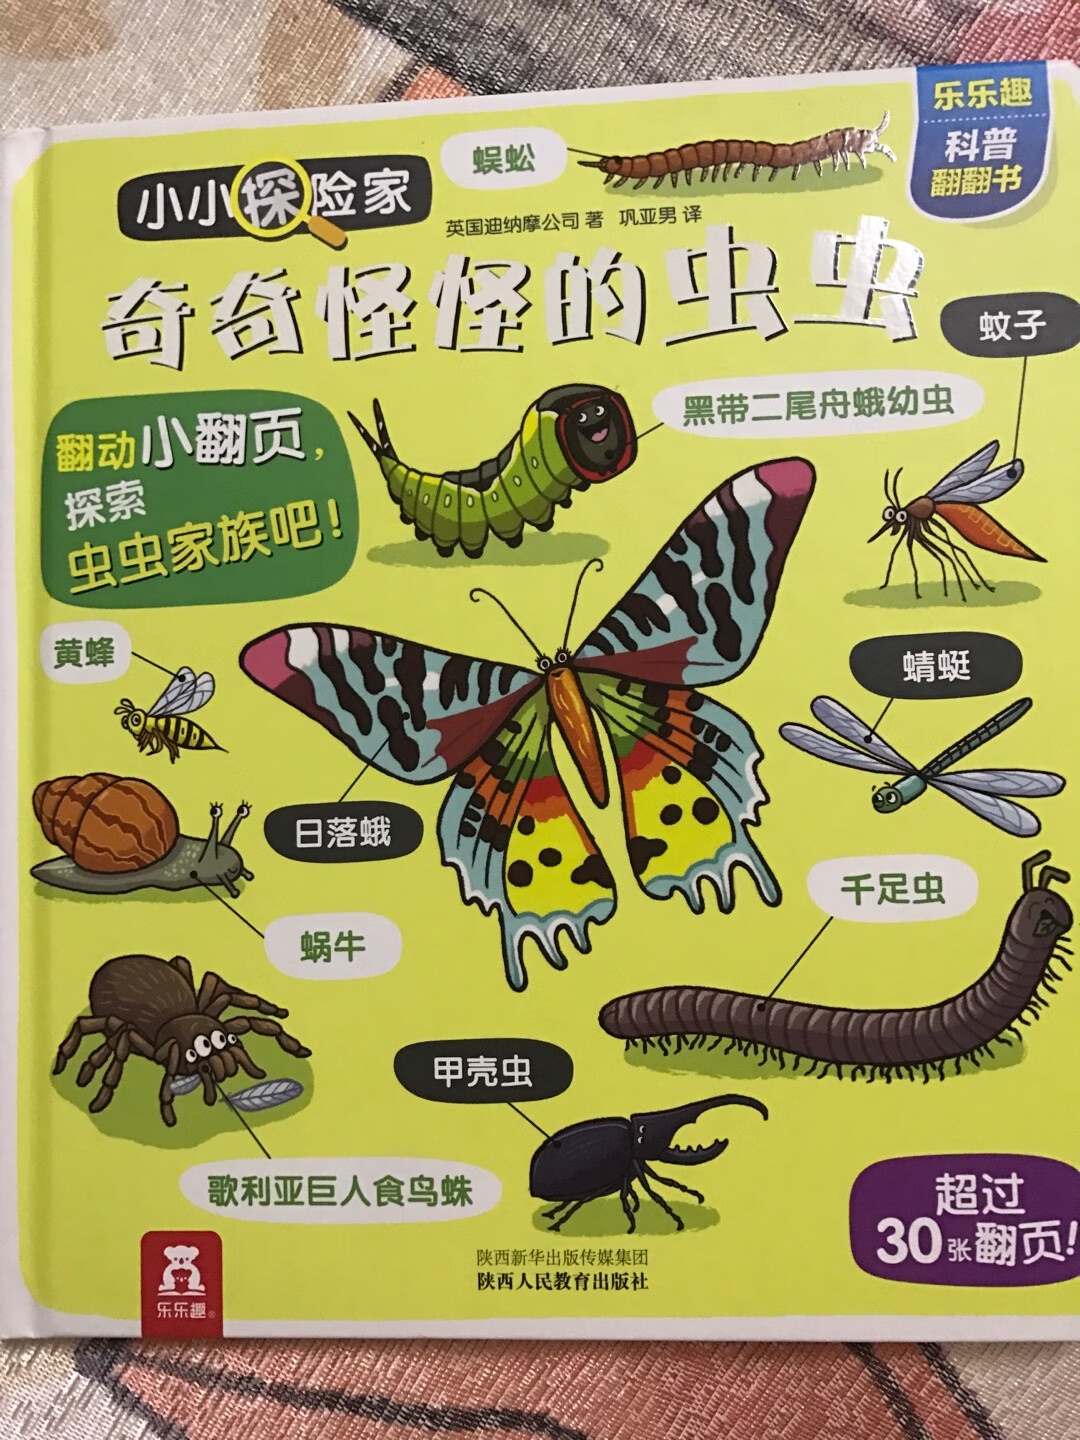 乐乐趣的书都很好看，都值得推荐。这本书介绍了各种不同的虫子，有大的，有小的，有飞舞的，有蠕动的，等等。每页还有多个翻翻页让小孩子自己去探索，既能认识种类繁多的昆虫，也能学习到昆虫的一些知识，小孩子也很喜欢看。